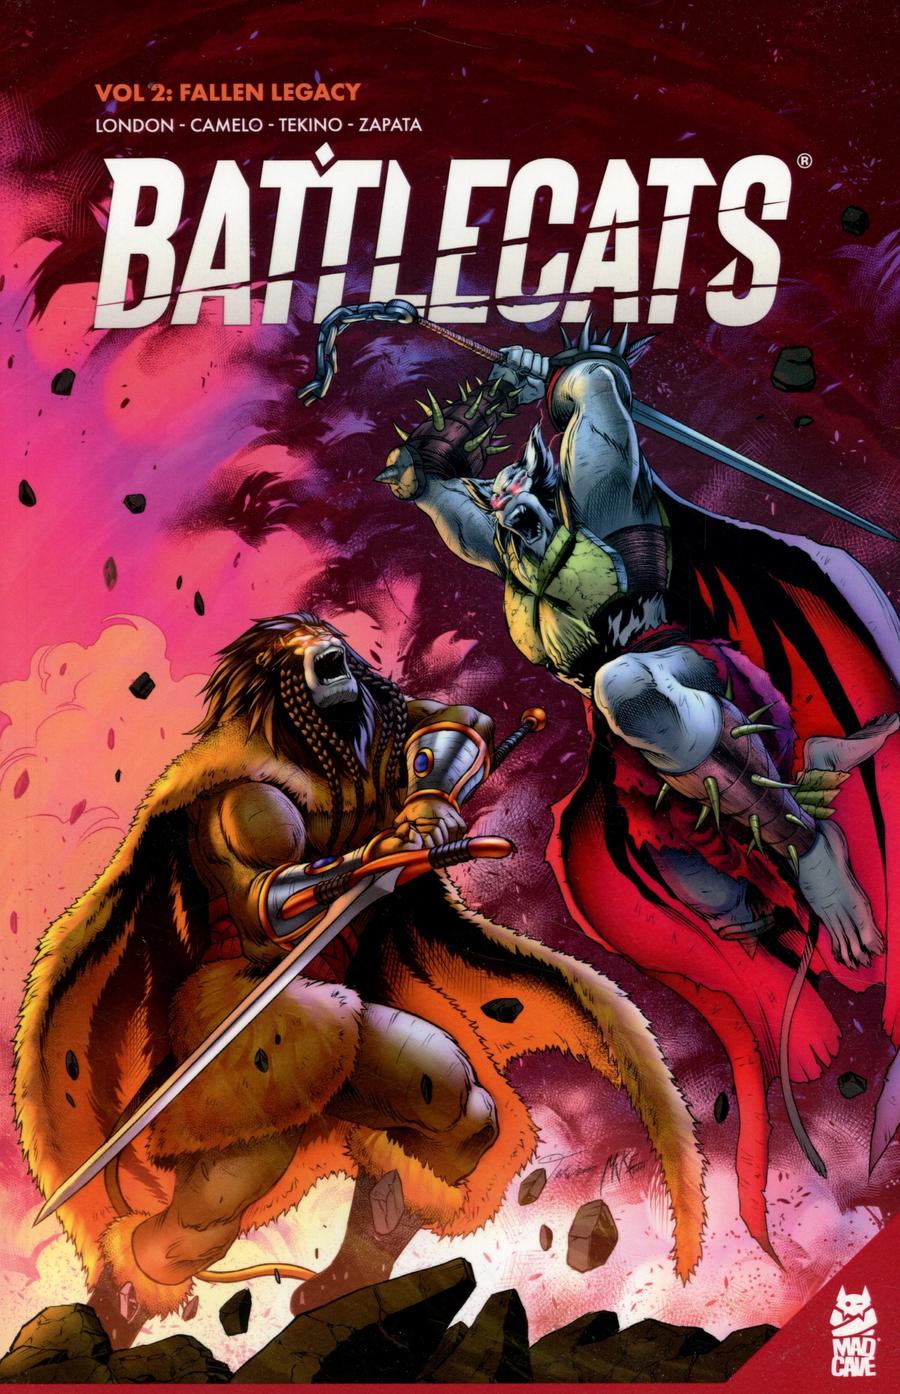 Battlecats Vol 2 Fallen Legacy TP